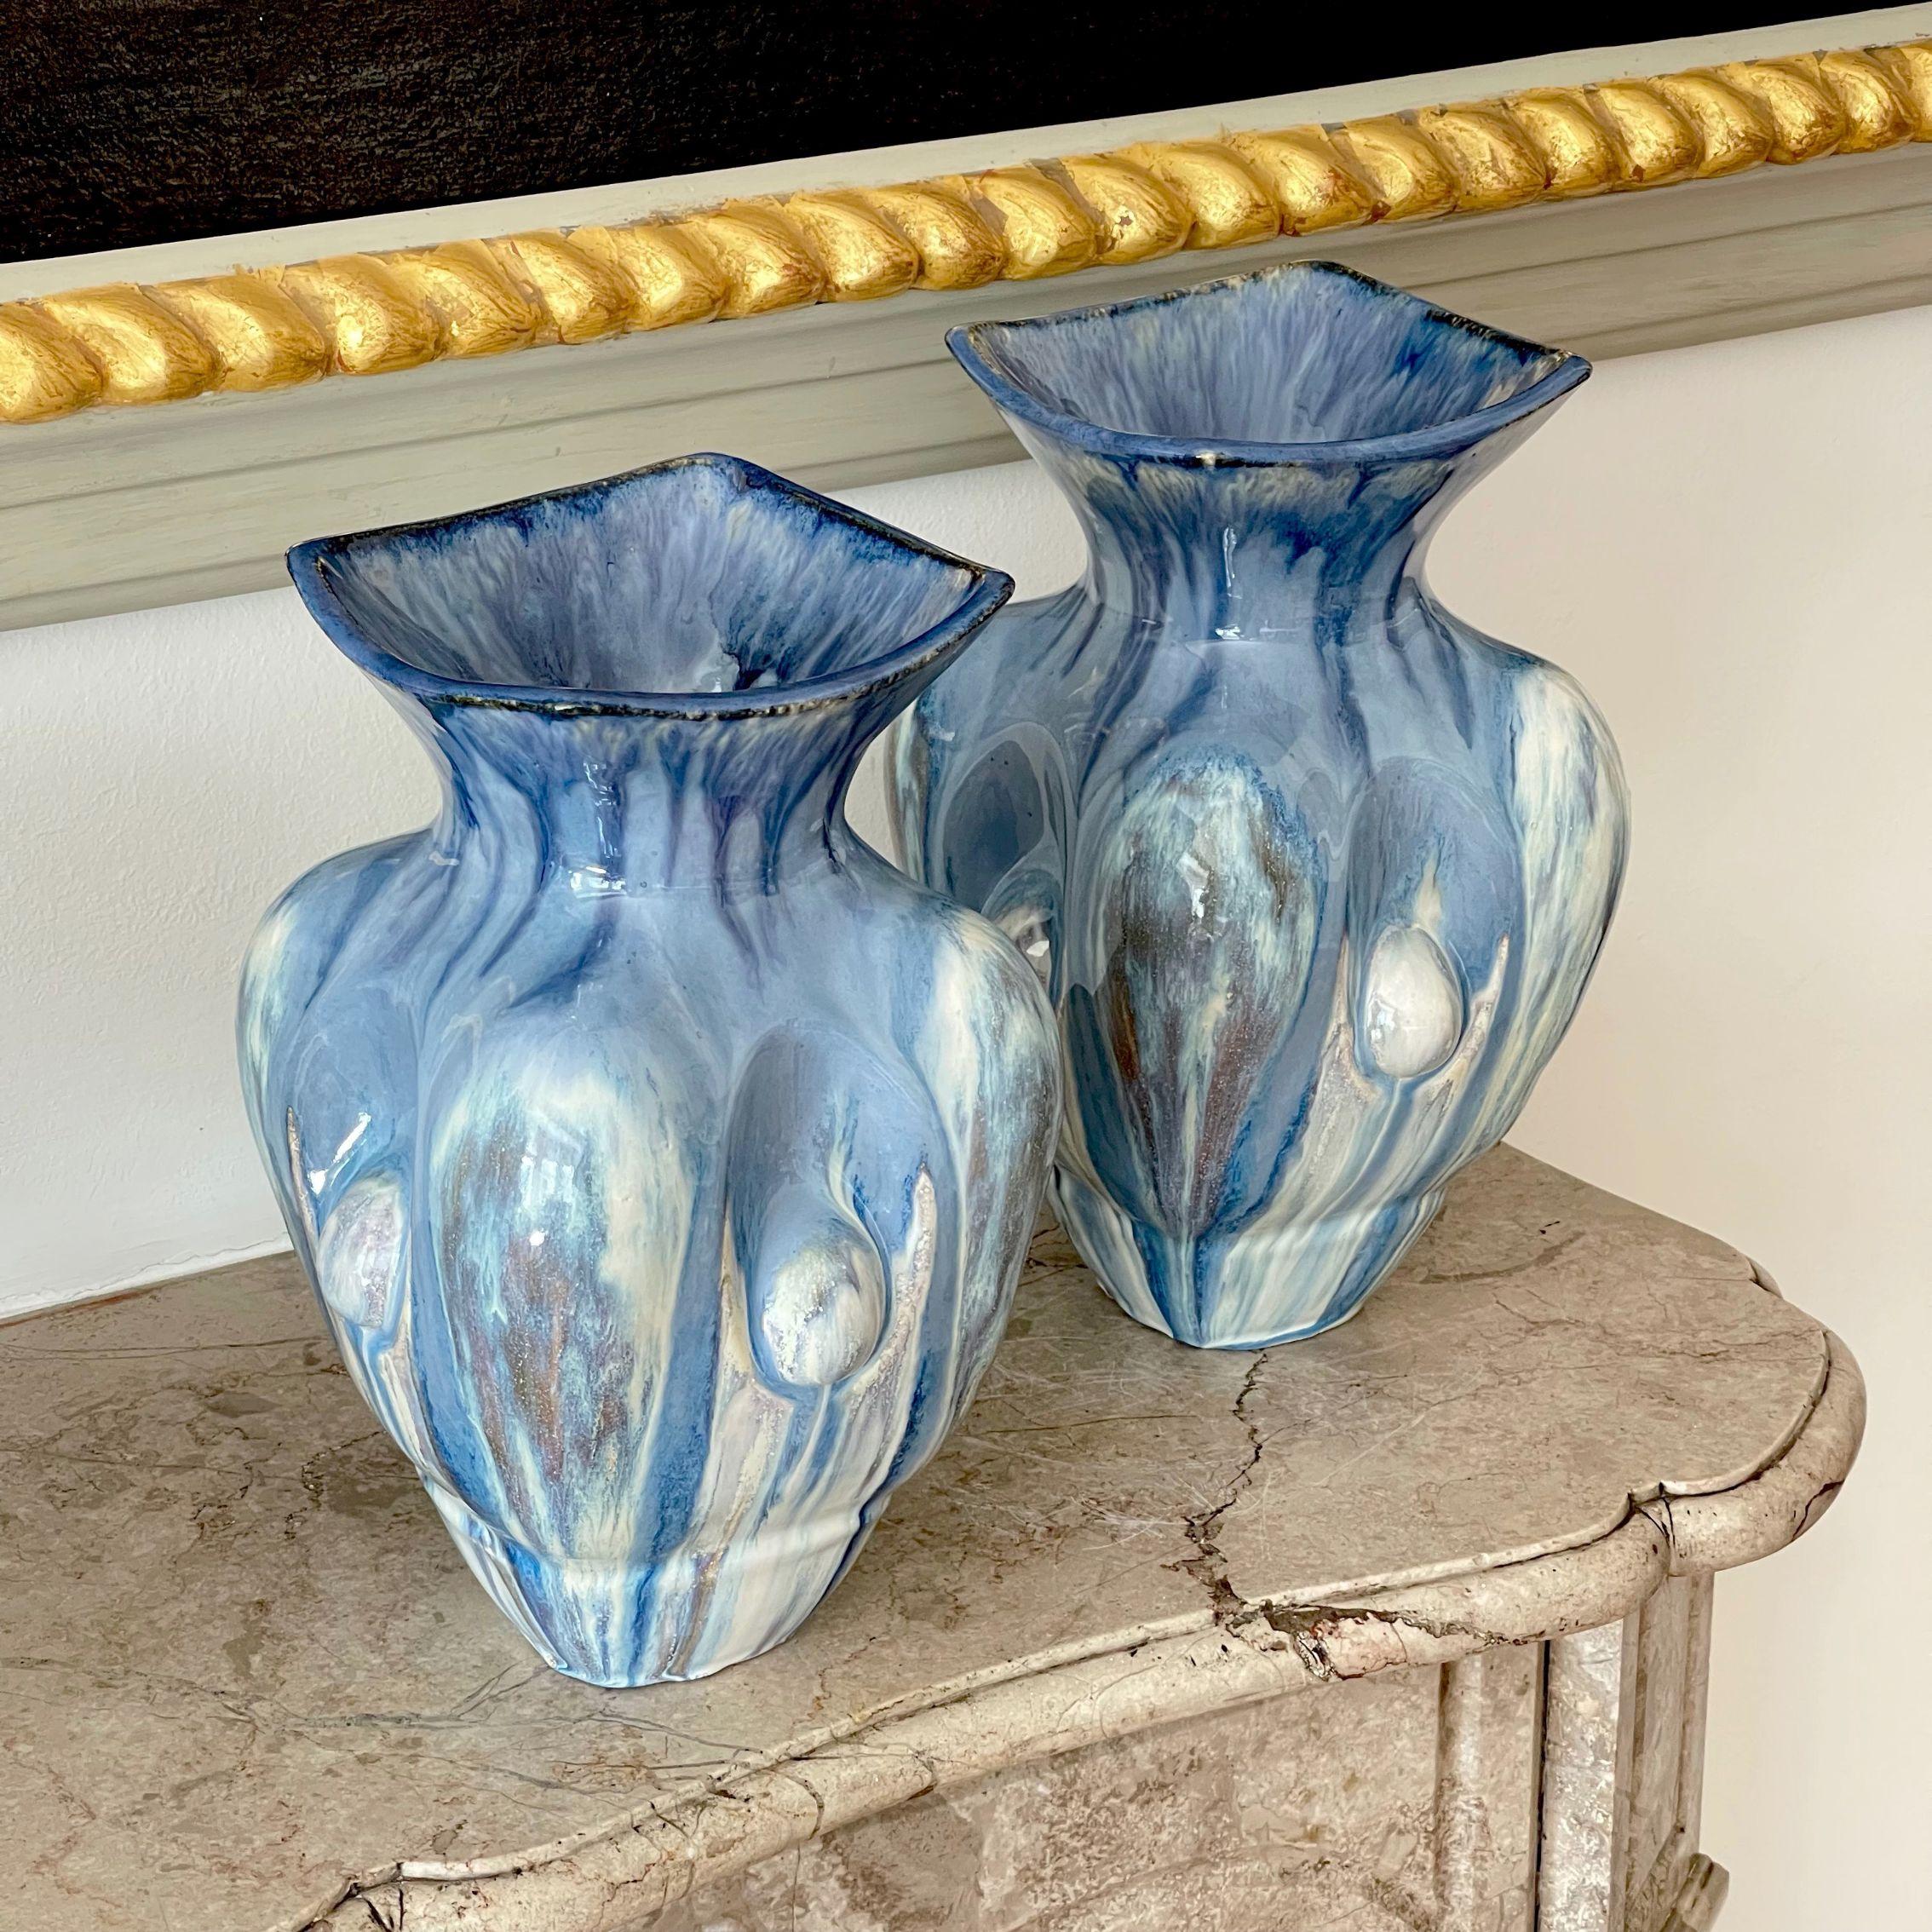 Glazed Pair of Sky Blue Ceramic Vases Contemporary 21st Century Italian Unique Piece For Sale